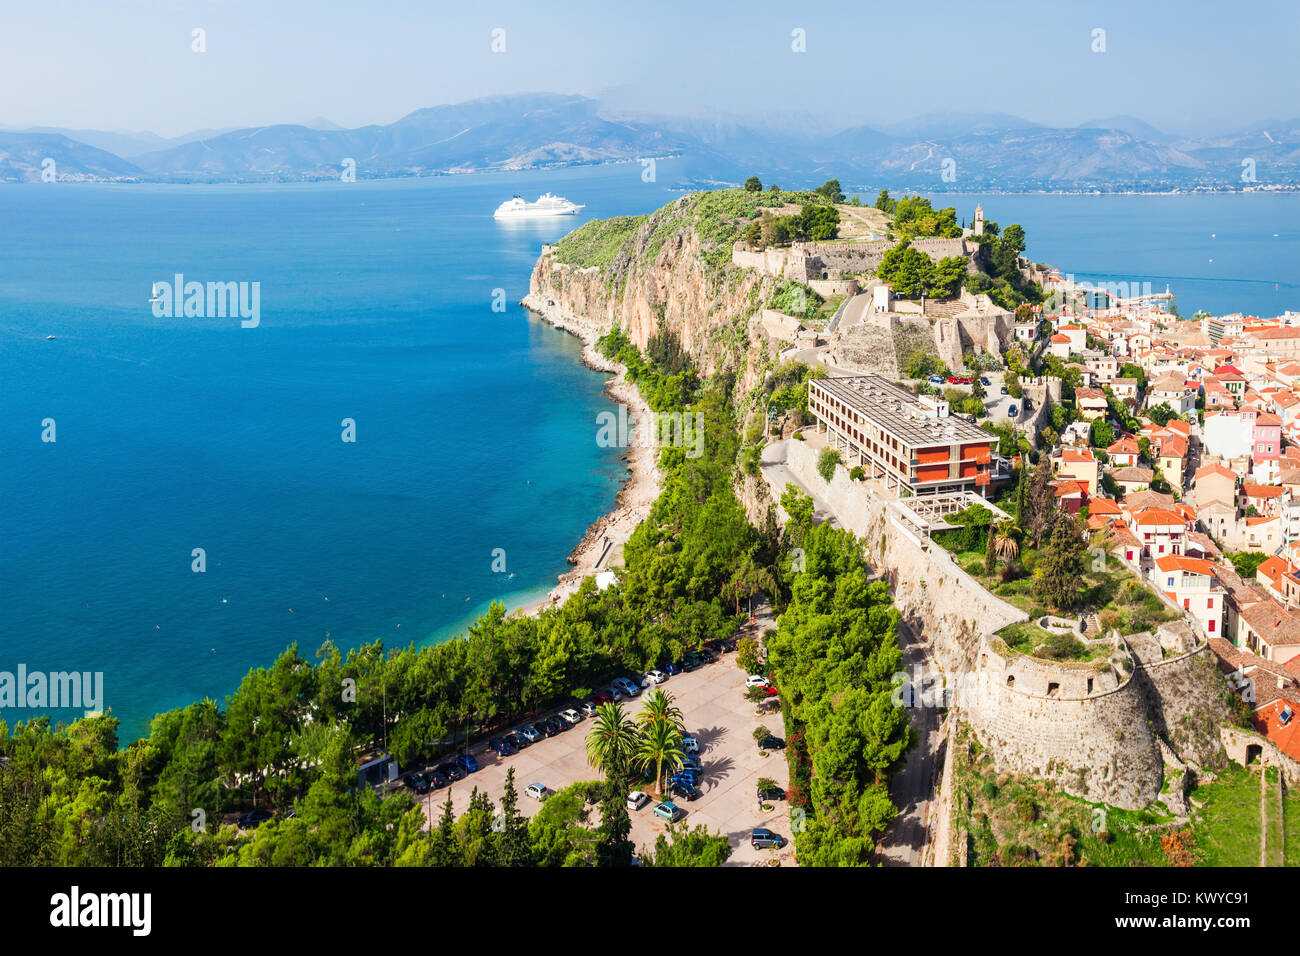 Antenna di Nafplio vista panoramica dalla fortezza Palamidi. Nafplio è una città portuale nella penisola del Peloponneso, in Grecia. Foto Stock